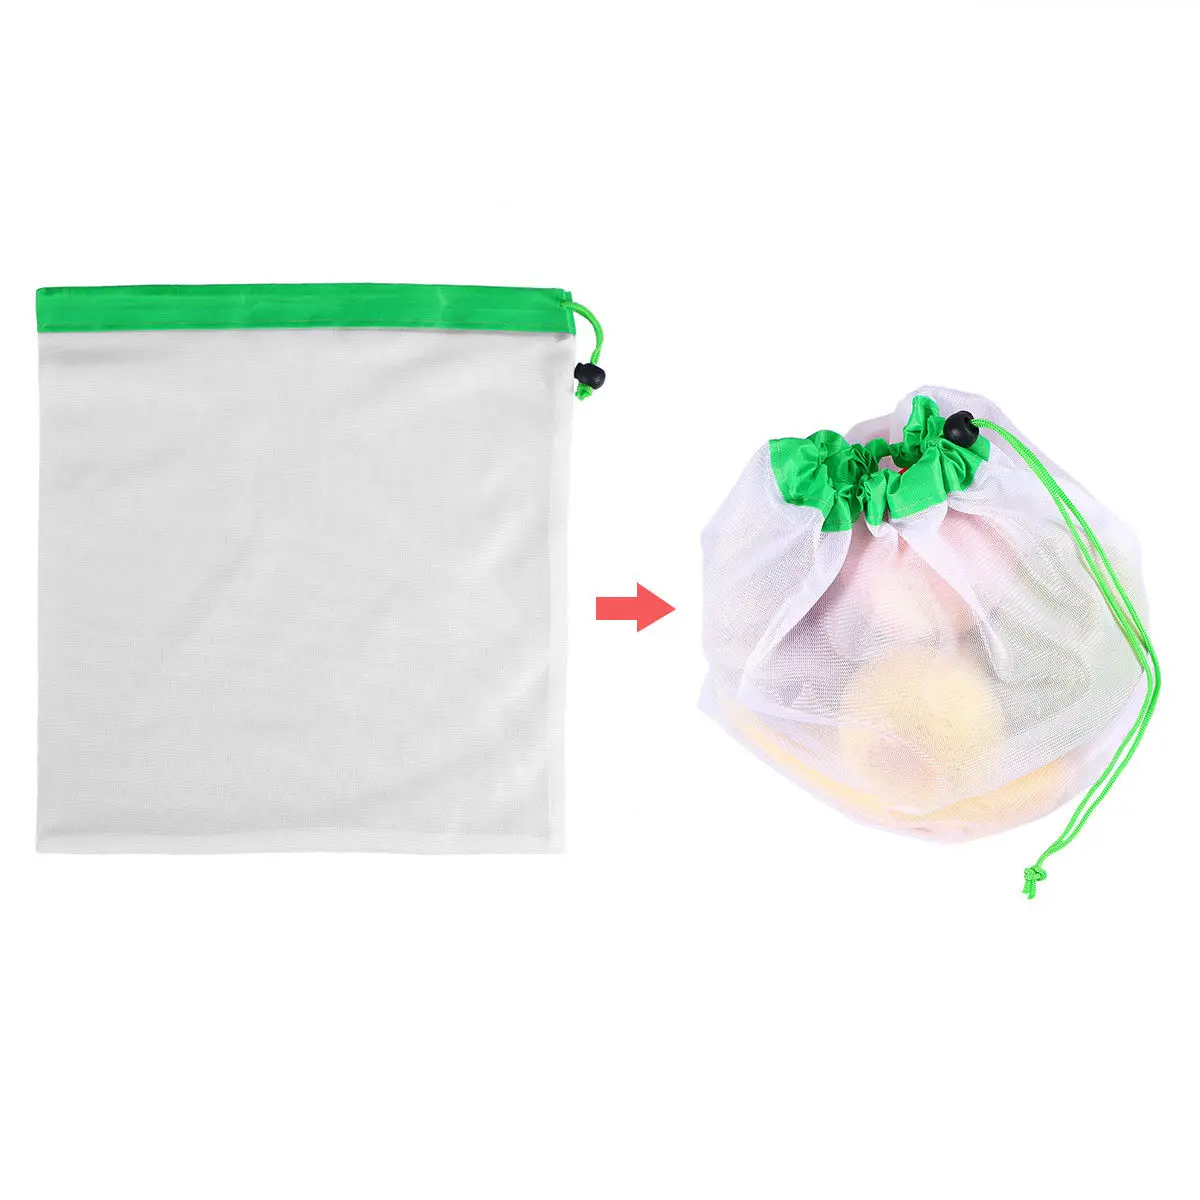 3 размера, кухонные сетчатые сумки для хранения, моющиеся мешки, для хранения продуктов, для покупок, для фруктов, овощей, для игрушек, для мелочей, сумка-Органайзер, многоразовая